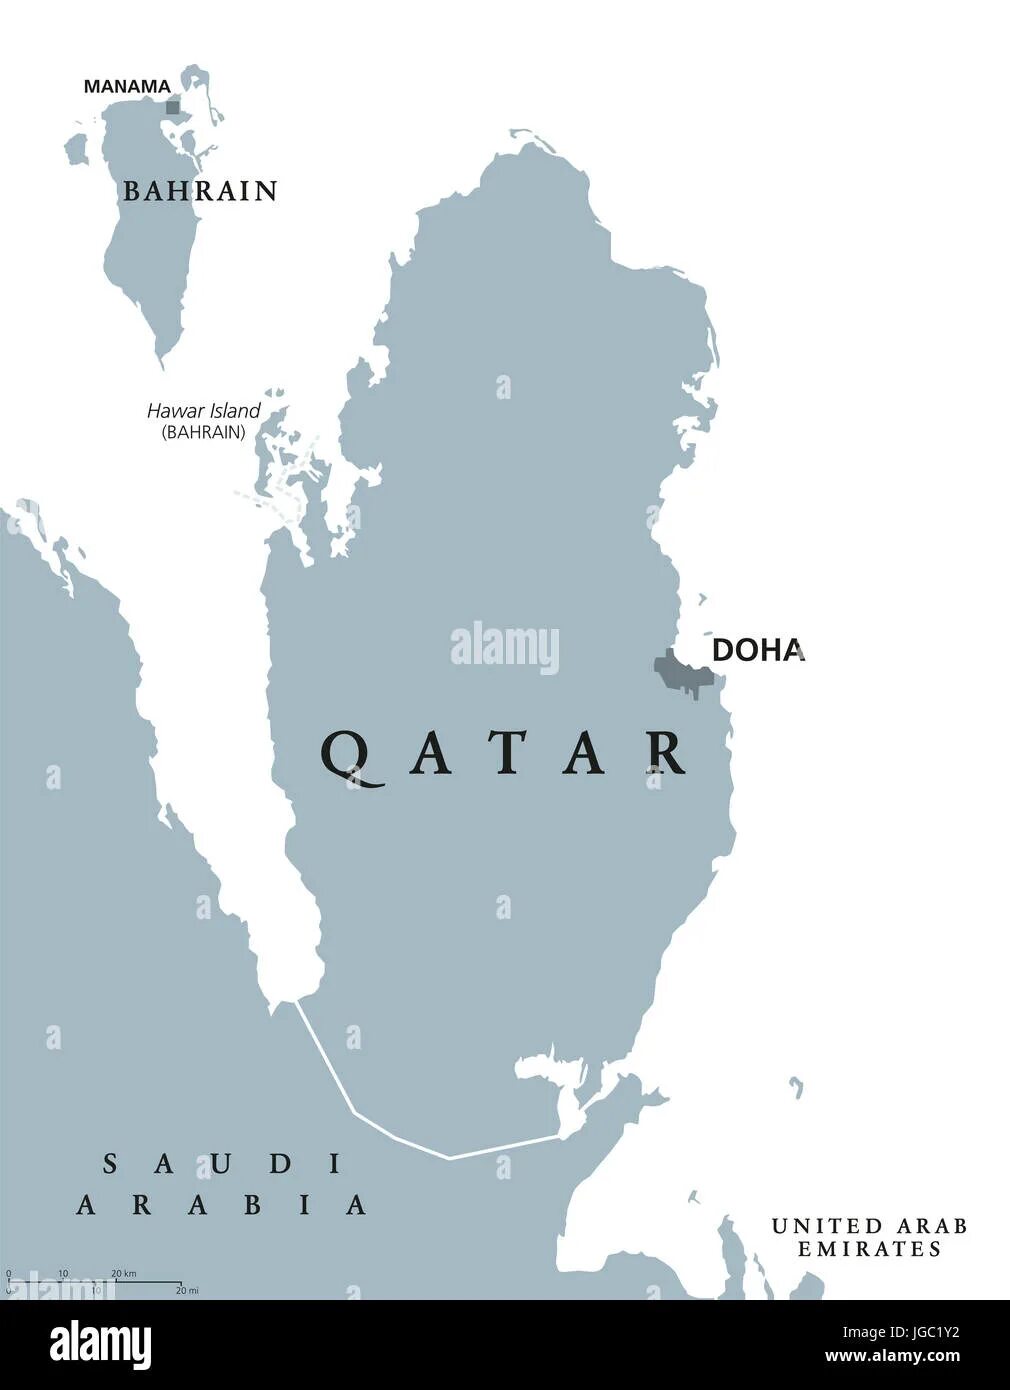 Страна доха где находится. Катар на карте. Катар политическая карта. Доха столица Катара на карте. Катар расположение.